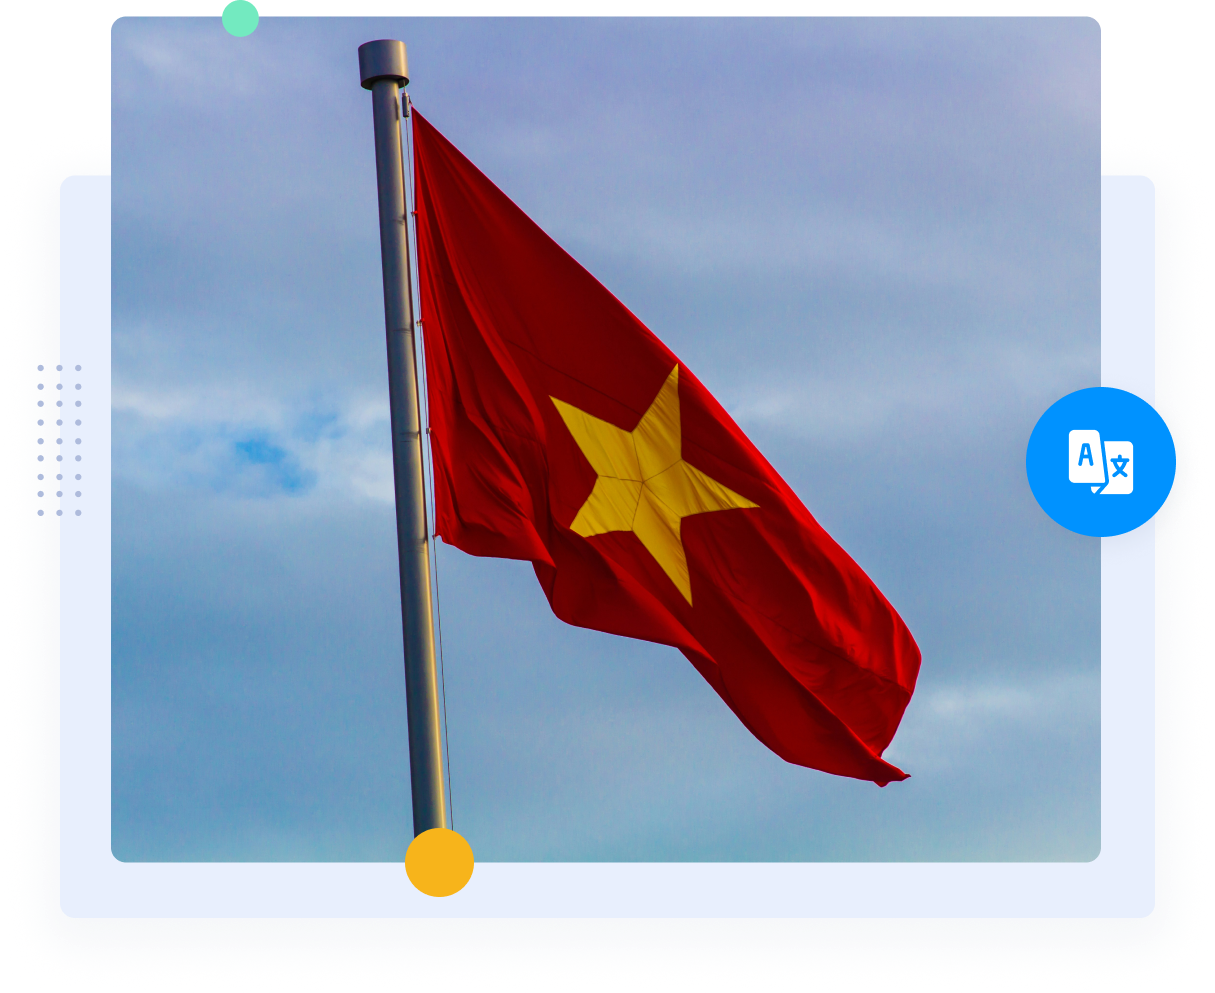 La bandera roja de Vietnam con la estrella amarilla representa las traducciones vietnamita-inglés.